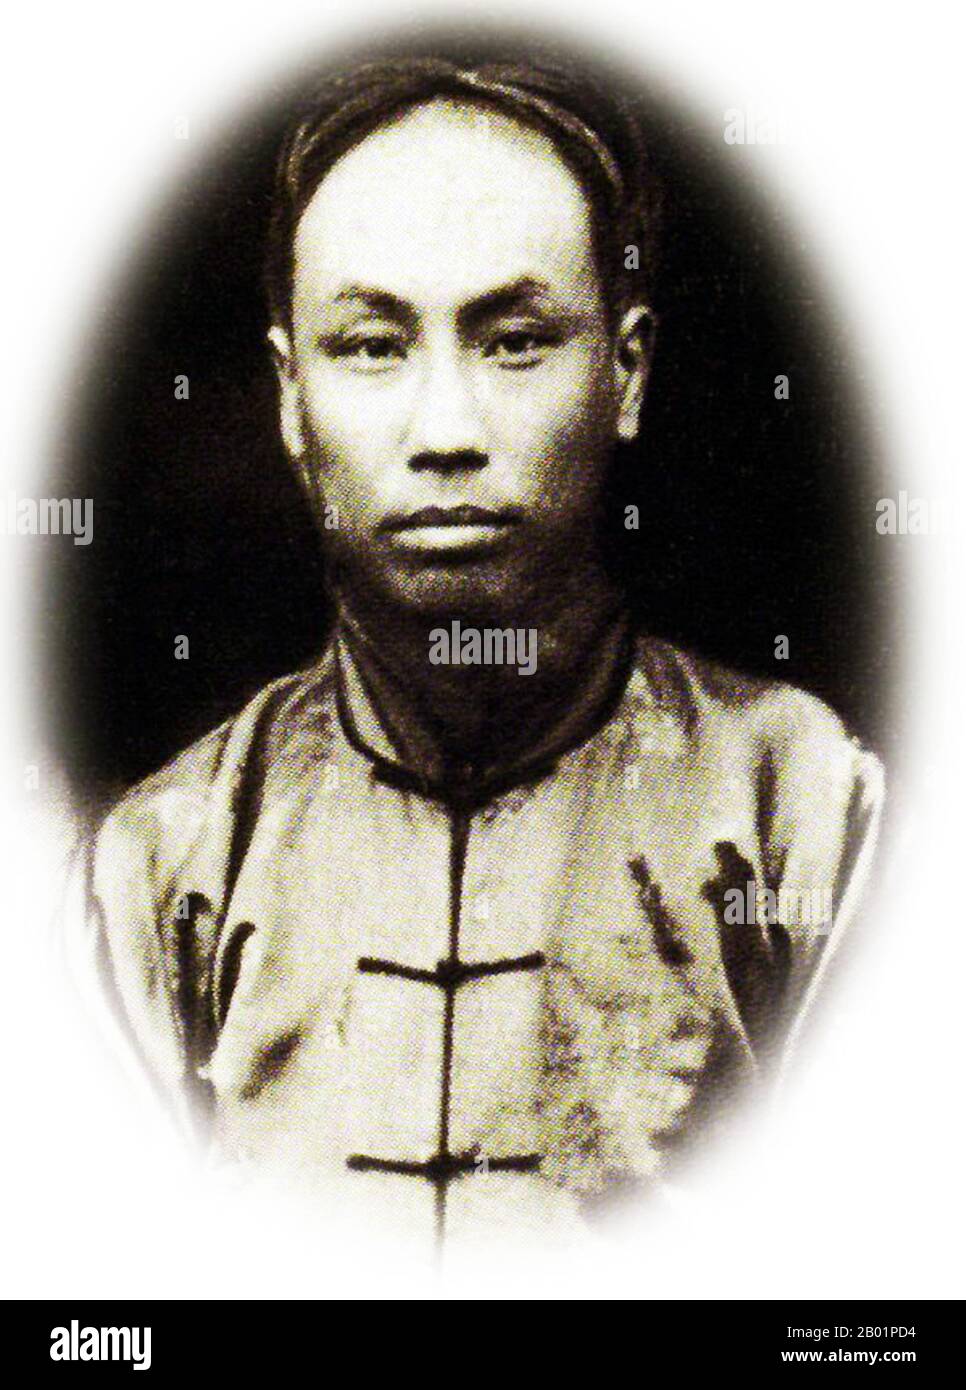 Cina: Chen Duxiu (8 ottobre 1879 - 27 maggio 1942), figura di spicco del movimento del 4 maggio, co-fondatore del Partito Comunista Cinese, educatore, filosofo, politico, 1920 circa Chen Duxiu ha giocato molti ruoli diversi nella storia cinese. Fu una figura di spicco nella Rivoluzione Xinhai anti-imperiale e nel movimento per la scienza e la democrazia del 4 maggio. Insieme a li Dazhao, Chen fu cofondatore del Partito Comunista Cinese nel 1921. Fu il suo primo Segretario generale. Chen era un educatore, filosofo e politico. La sua casa ancestrale era ad Anqing, Anhui. Foto Stock